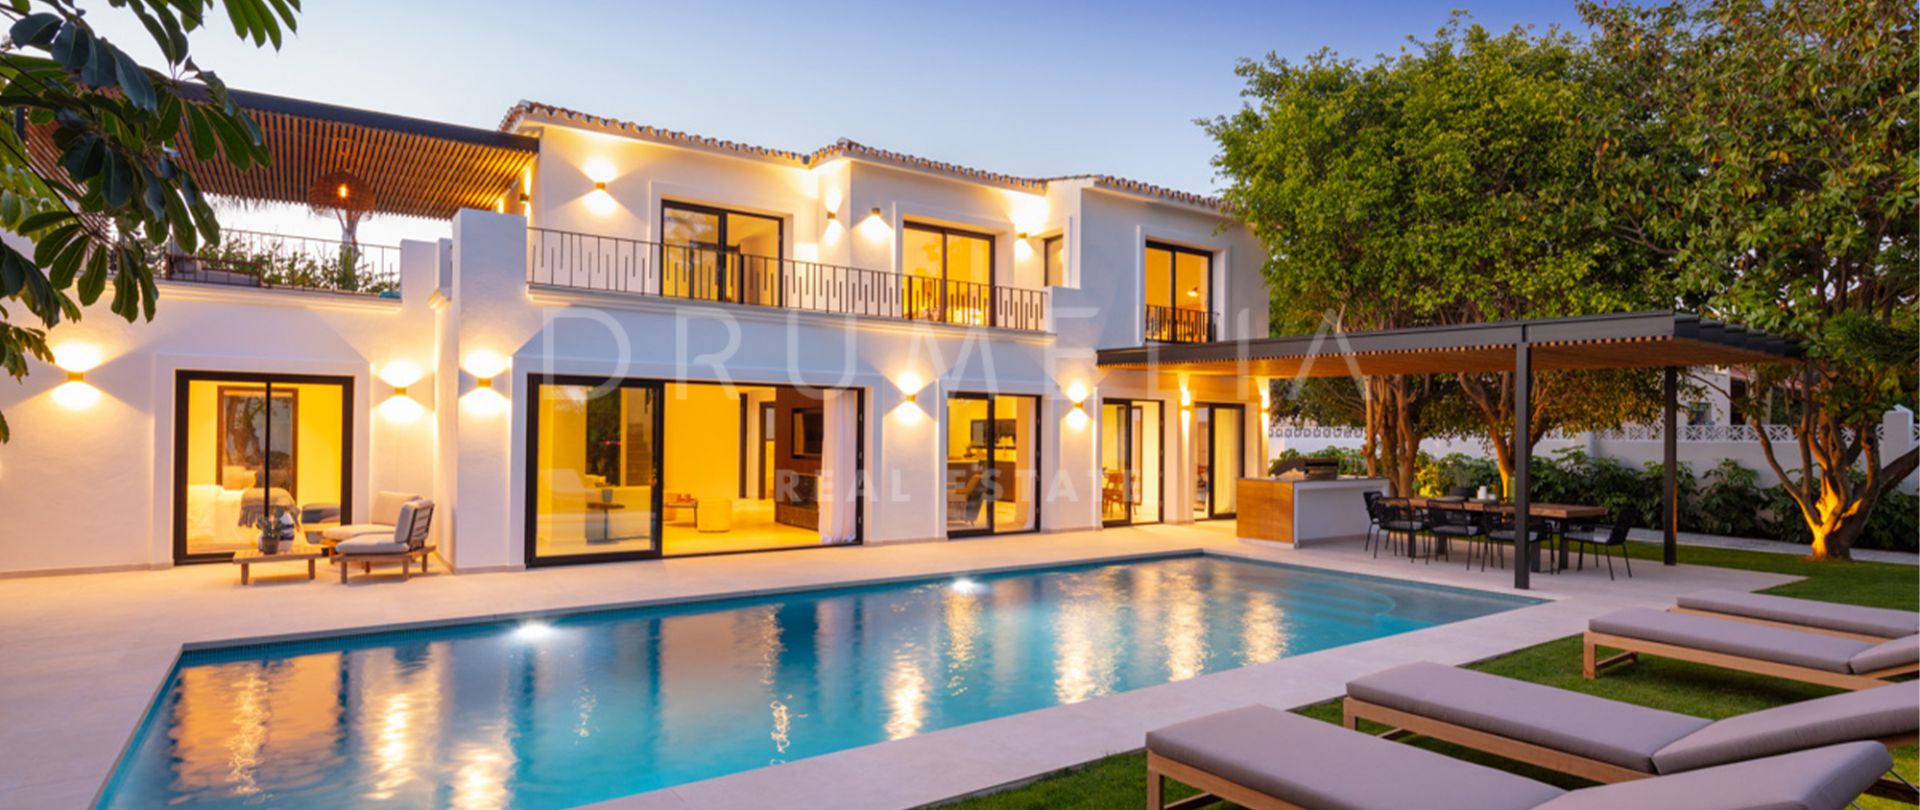 Villa de luxe récemment rénovée à quelques pas de la plage de Cortijo Blanco Puerto Banus, Marbella